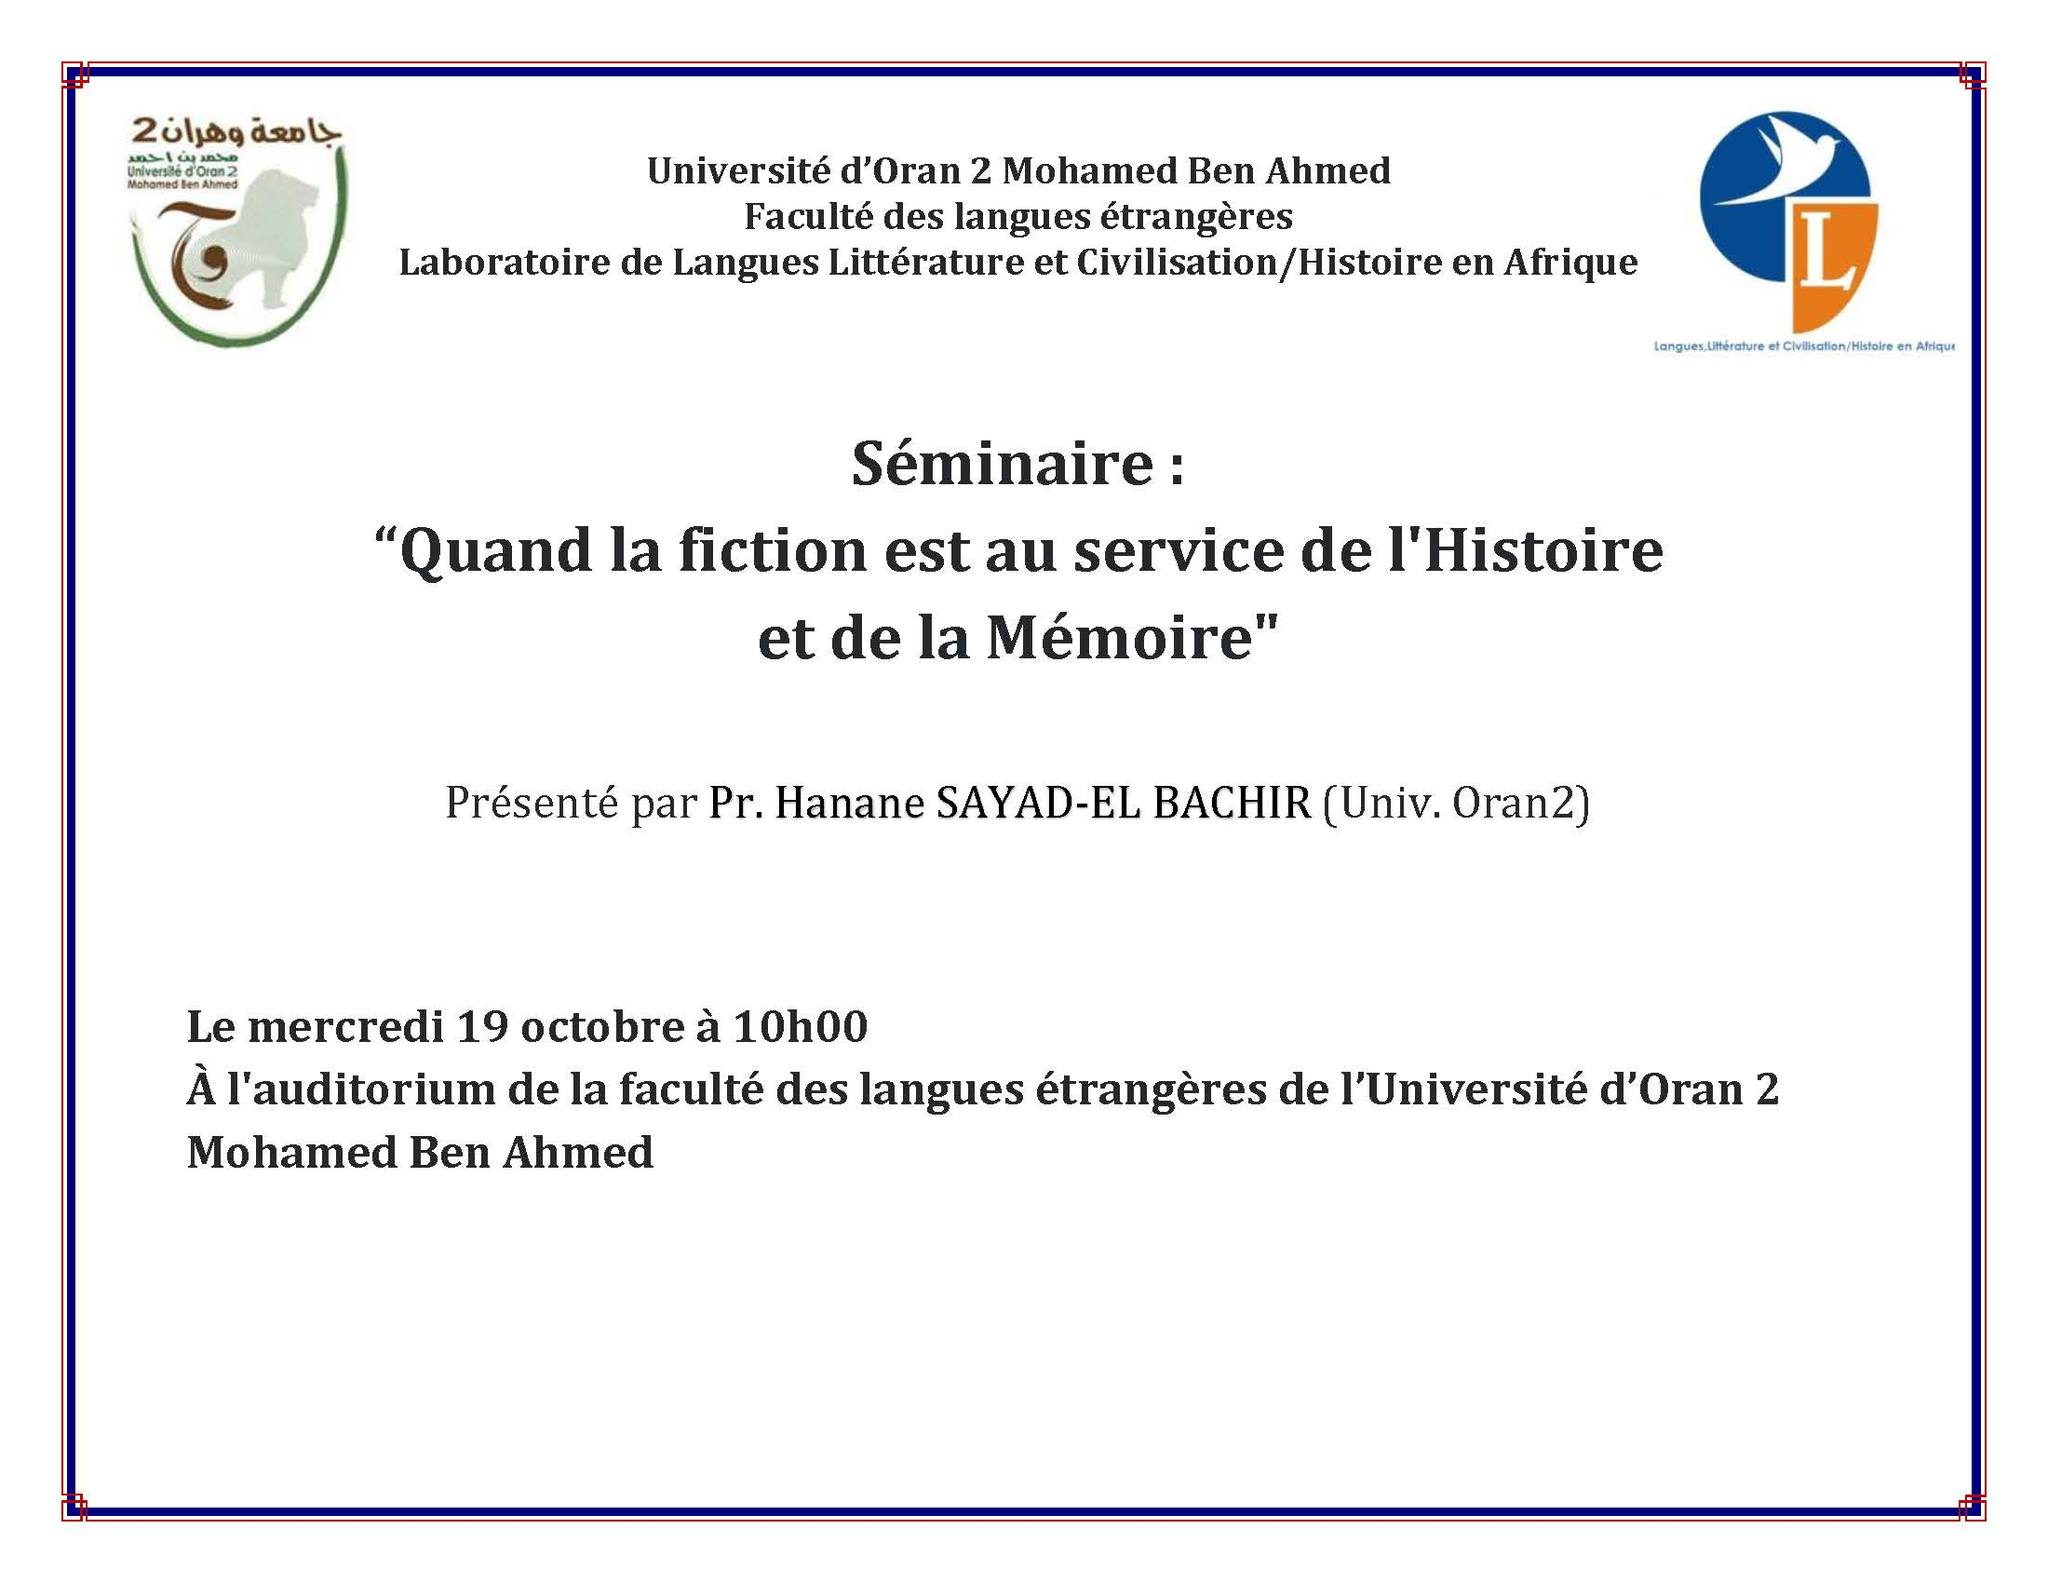 Séminaire destiné à tous les étudiants, présenté par Pr. Hanane SAYAD EL BACHIR, intitulé: “Quand la fiction est au service de l’Histoire et de la Mémoire”